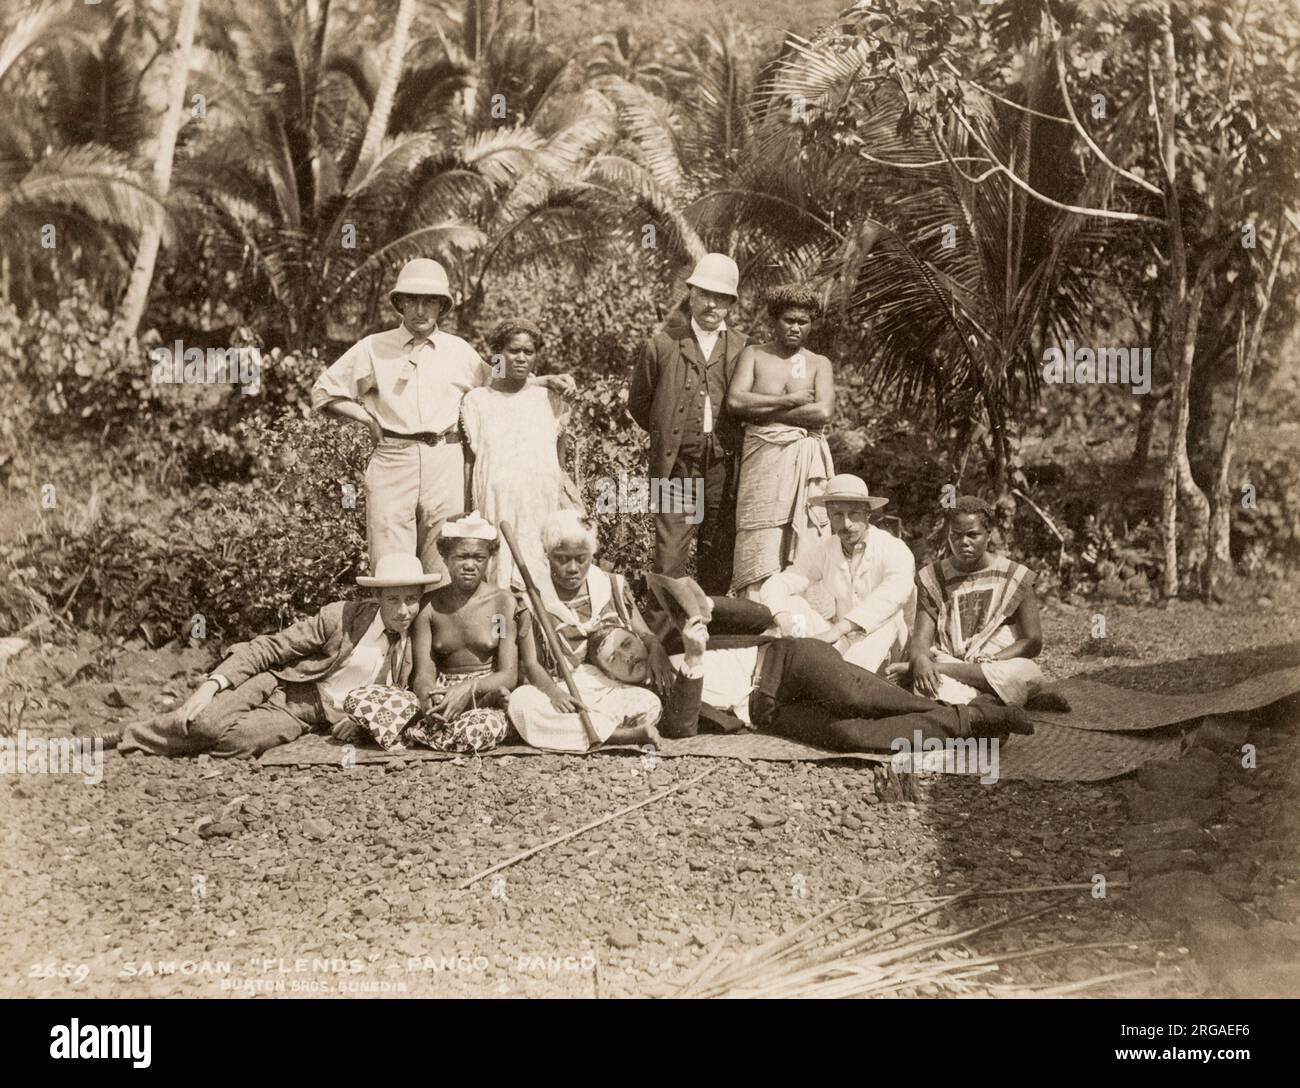 Vintage-Foto des 19. Jahrhunderts: Gruppe von Samoan-Ureinwohnern mit westlichen Männern, 'Pango Pango', Samoa. Pago Pago, die Hauptstadt des amerikanischen Samoa, umfasst eine Reihe von Küstendörfern auf der Insel Tutuila. Stockfoto